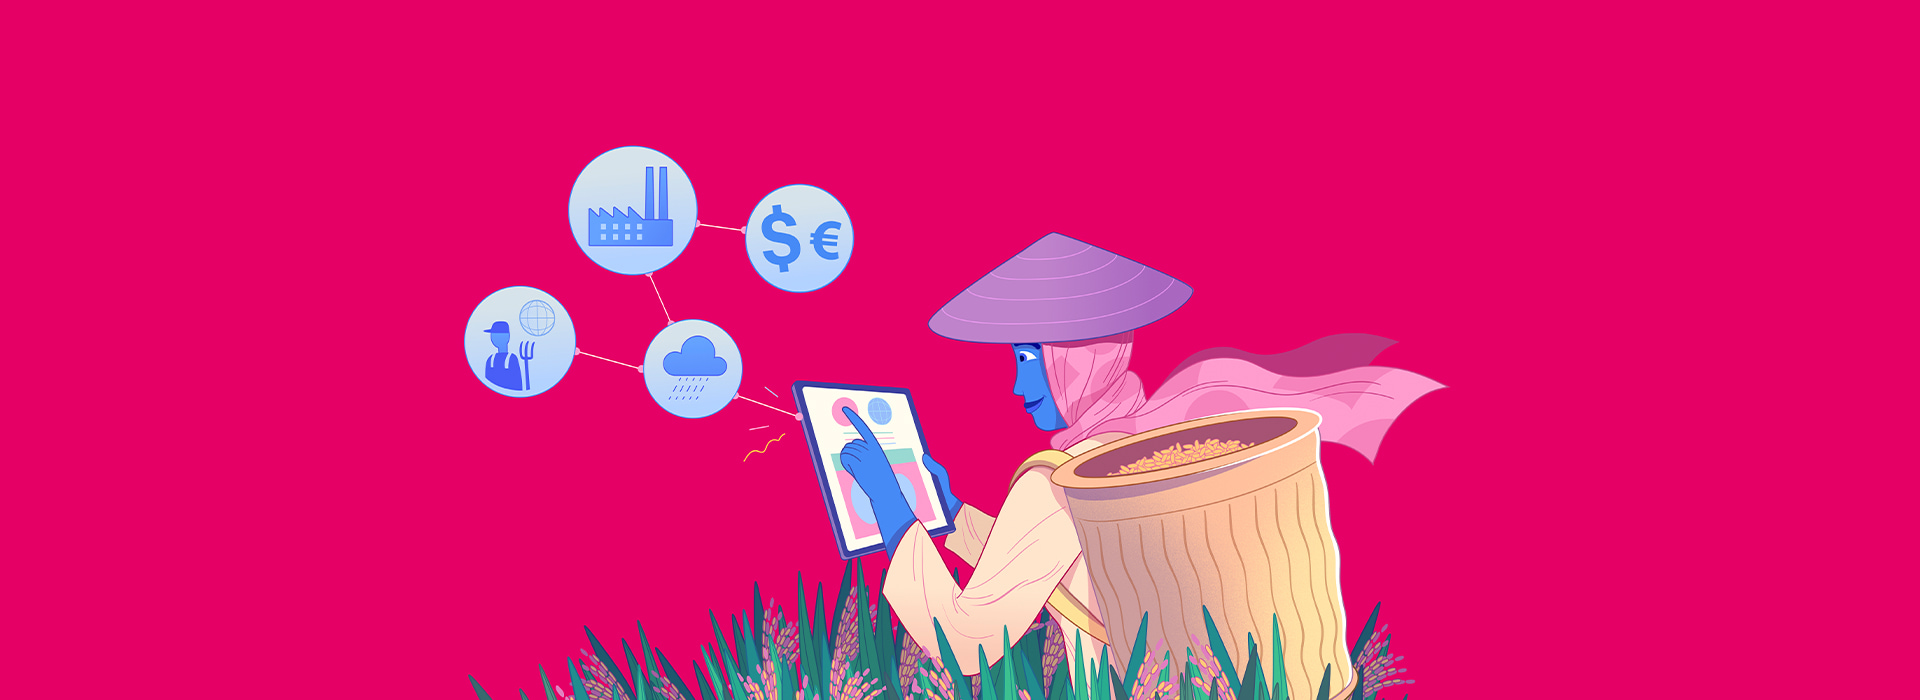 Ilustração de camponesa segurando um tablet, está com uma cesta de grãos nas costas e usa um chapéu